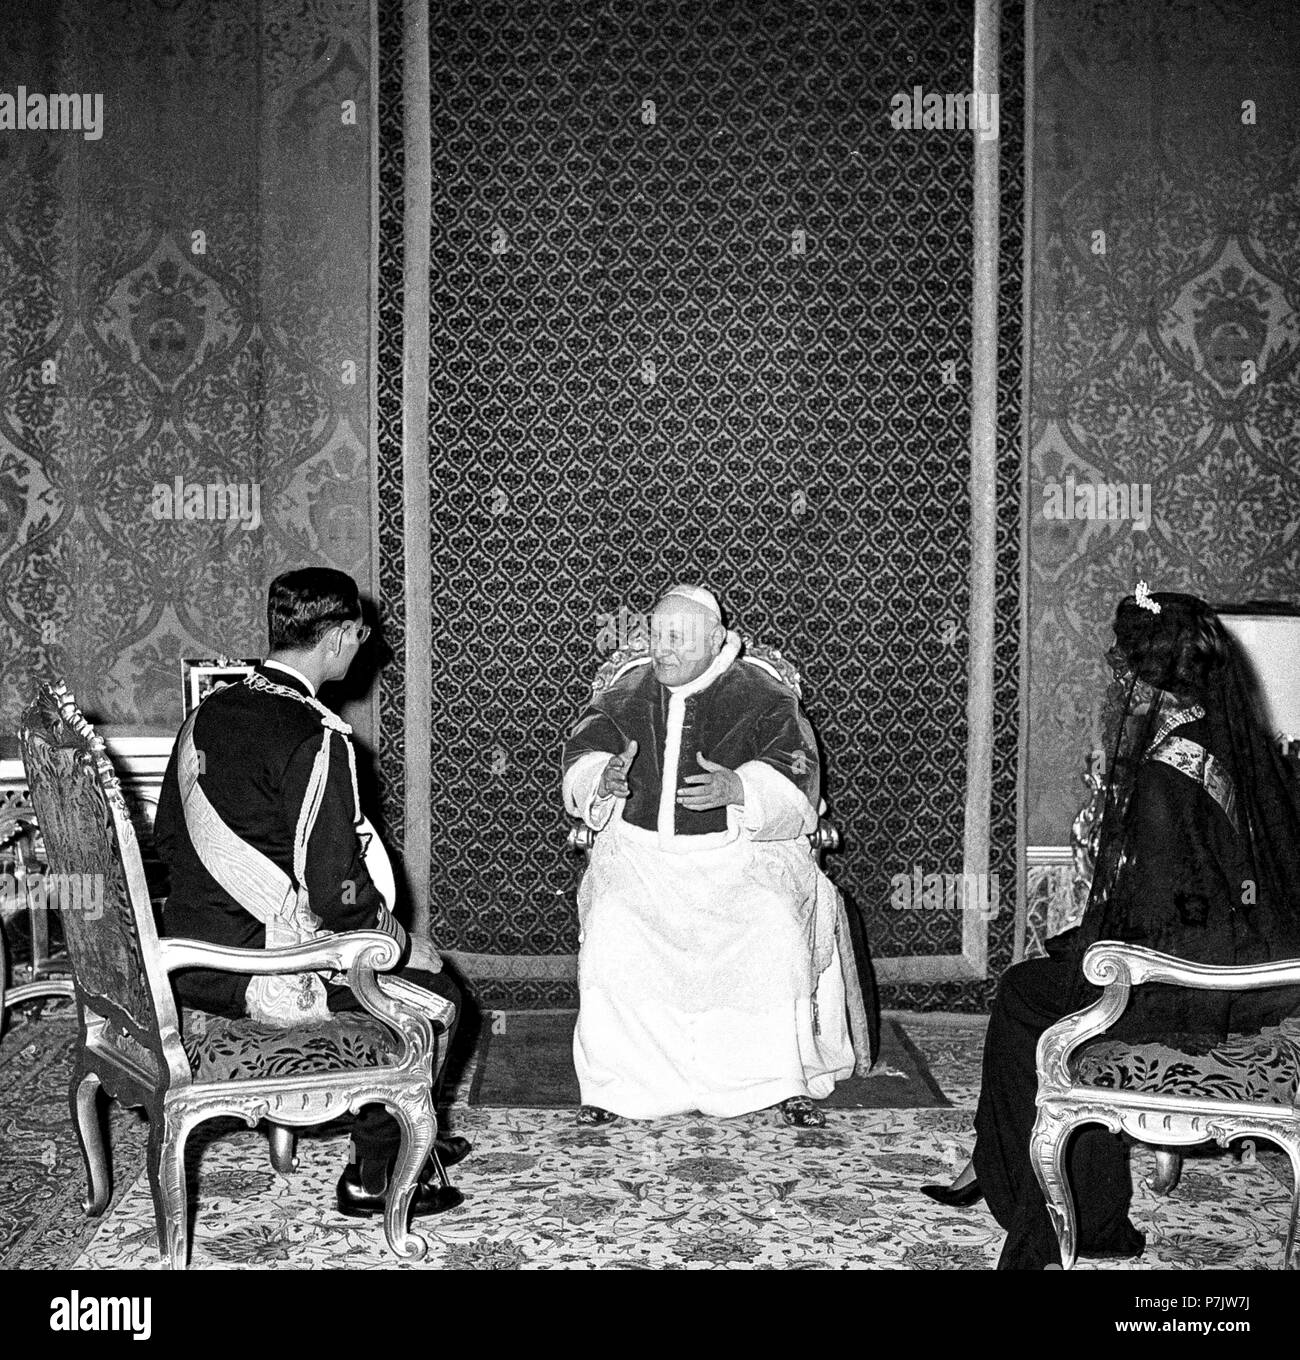 Vatican les Royals de la Thaïlande, Bhumibol Adulyadej et Sirikit Kitigakara, lors d'une visite au Pape Jean XXIII le 1 octobre 1960 Banque D'Images